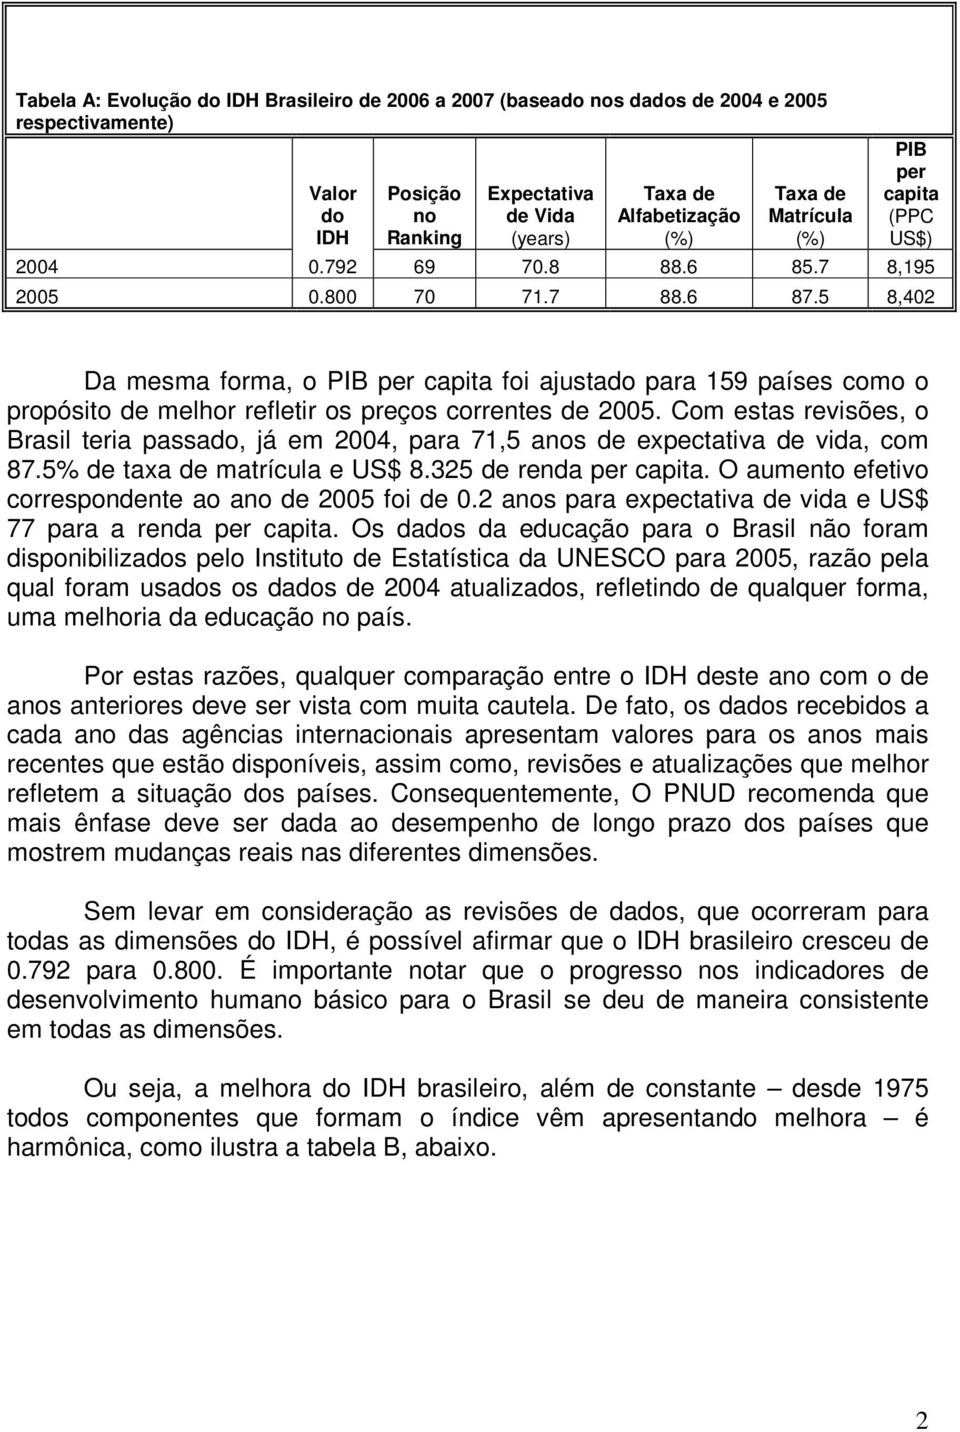 Com estas revisões, o Brasil teria passado, já em 2004, para 71,5 anos de expectativa de vida, com 87.5% de taxa de matrícula e US$ 8.325 de renda per.